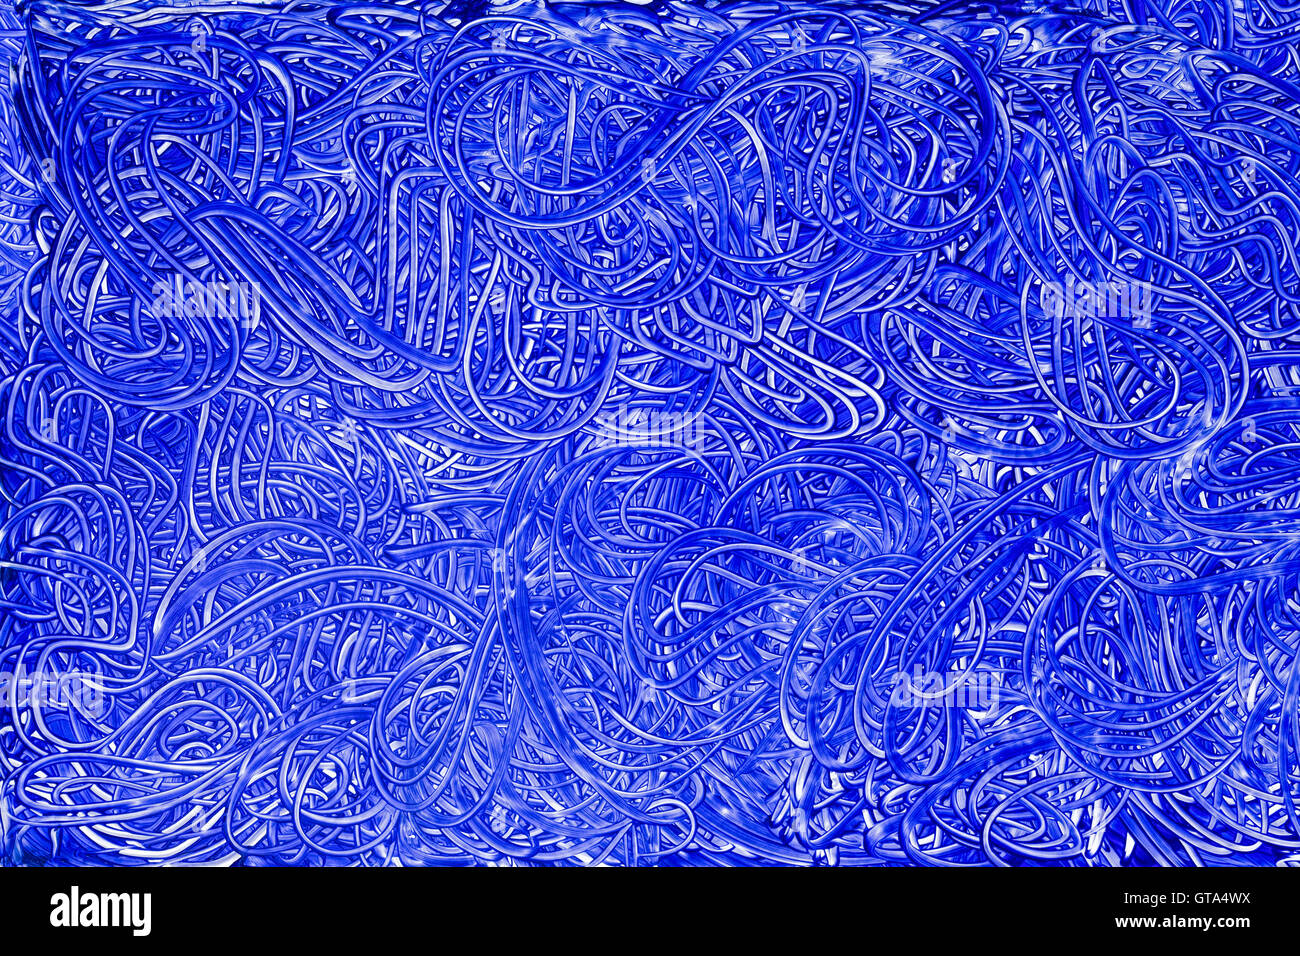 Grand bleu plein cadre enduit peinture à la main comme motif de fond avec des lignes courbes et ondulées copy space Banque D'Images